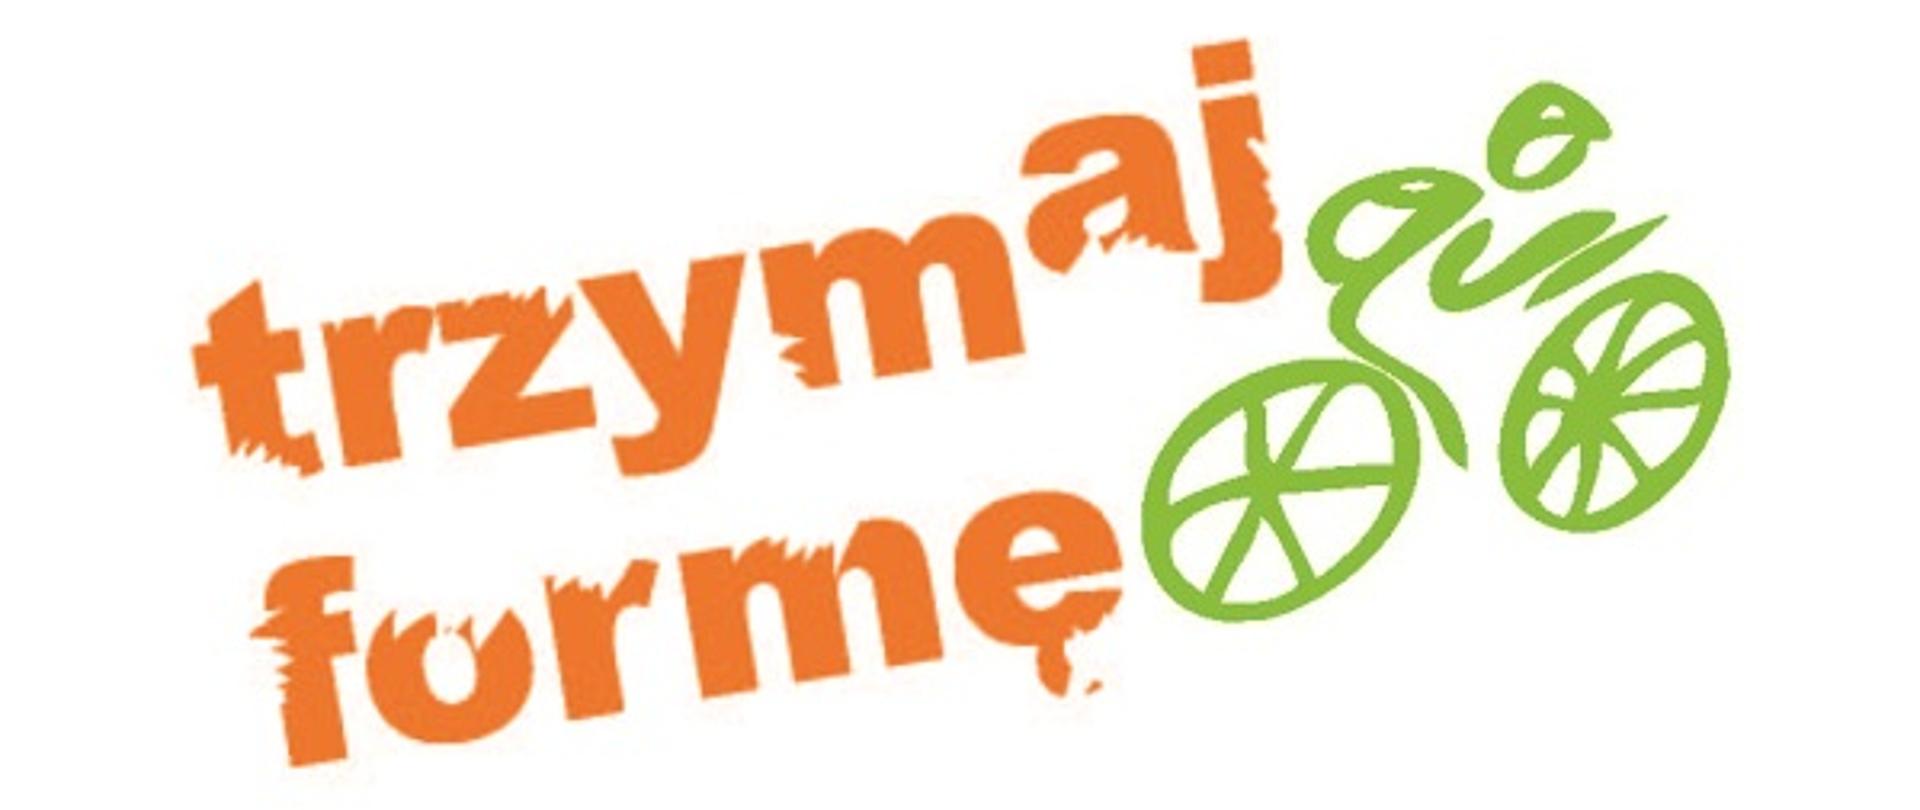 Pomarańczowy napis "trzymaj formę" oraz zielony rysunek rowerzysty